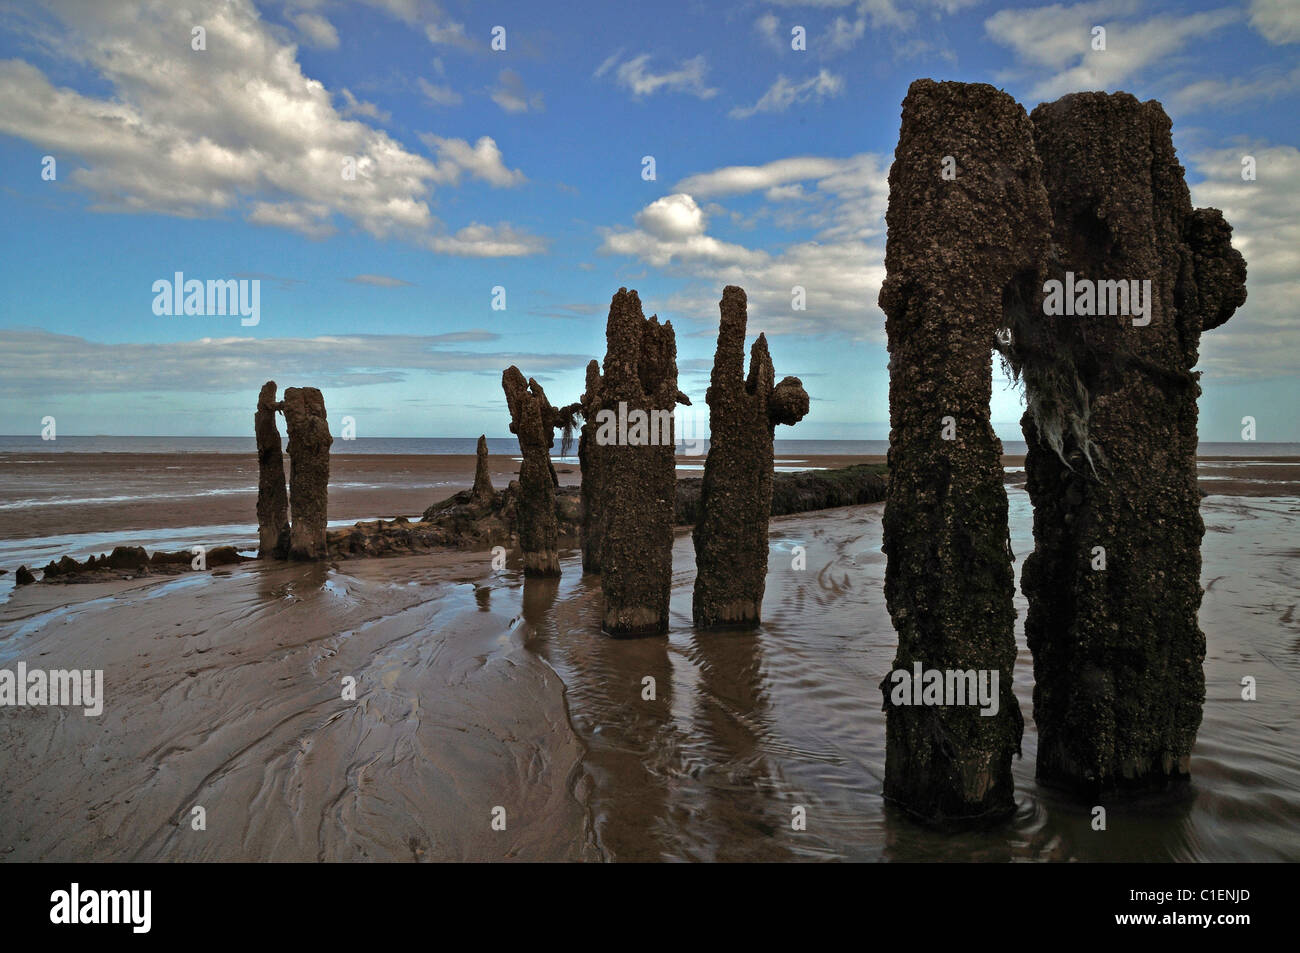 Groynes on a beach Stock Photo